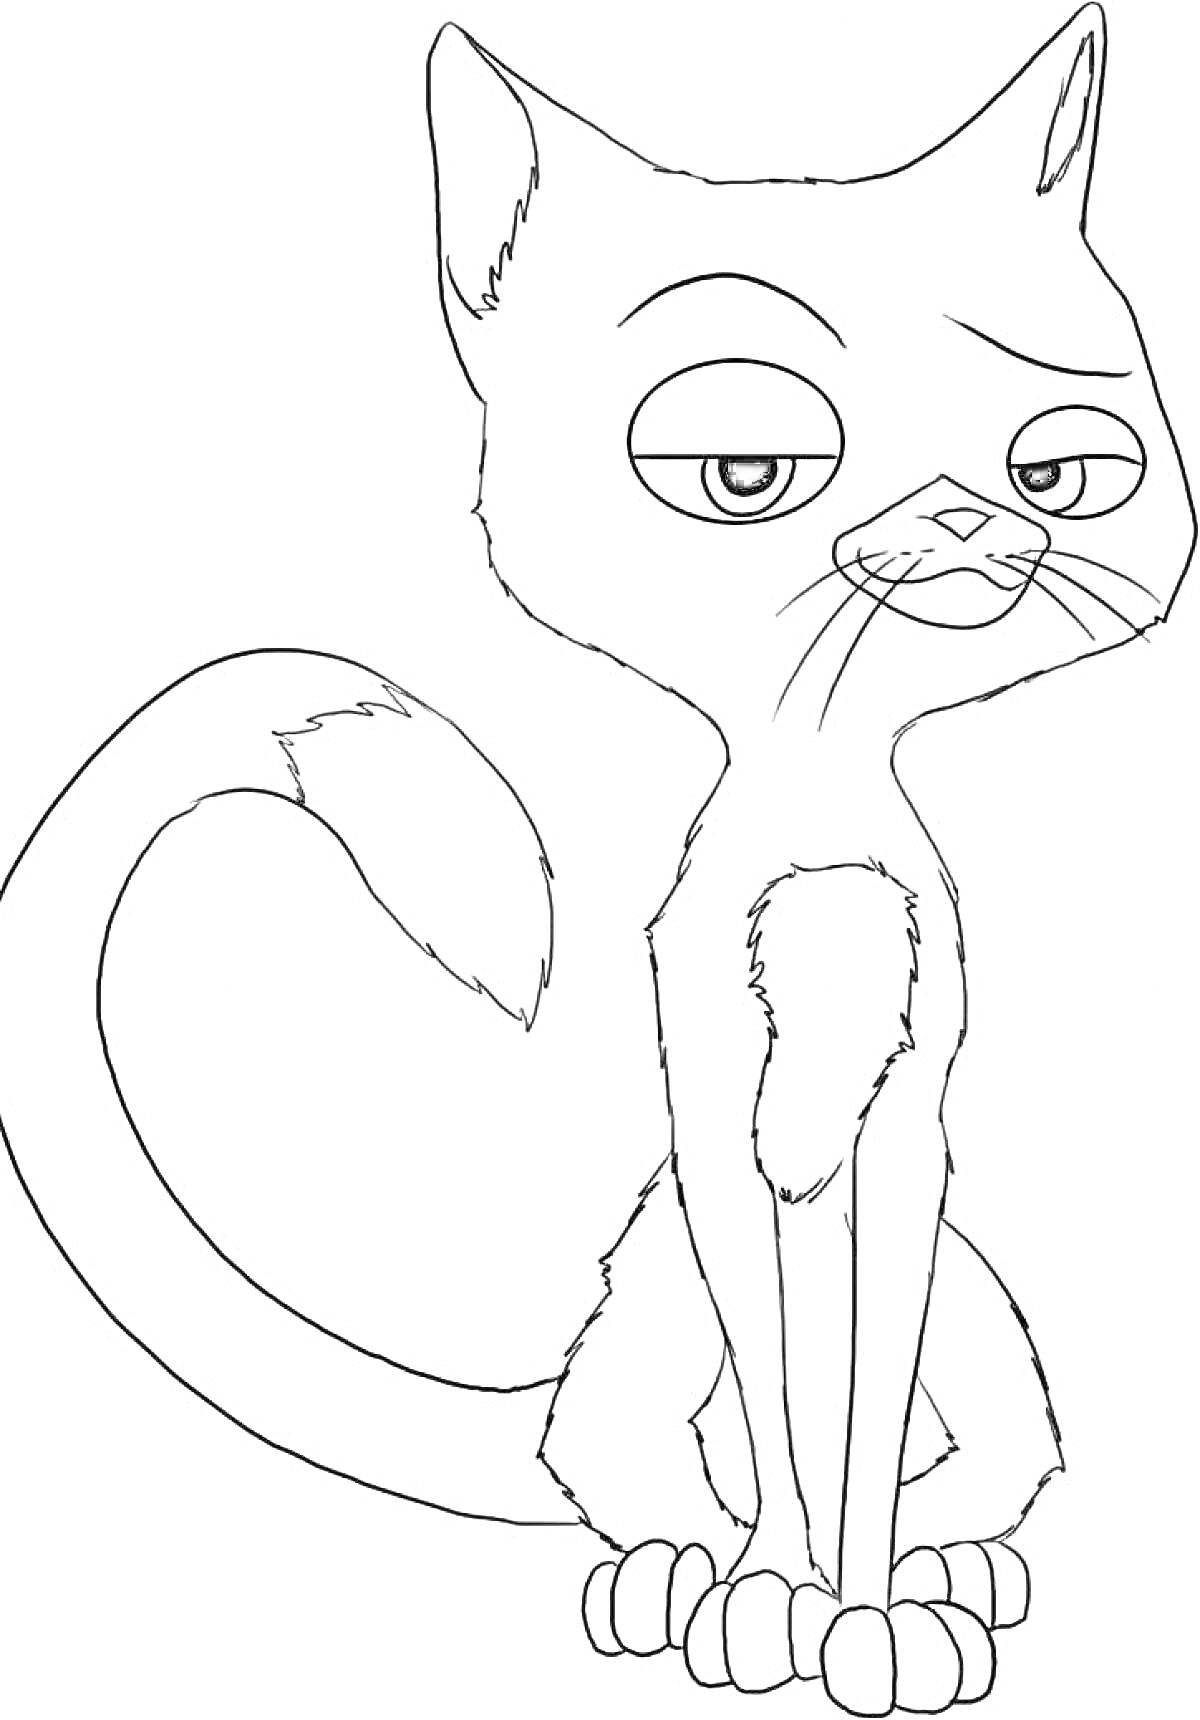 Раскраска мультяшный кот с большим хвостом и выразительными глазами